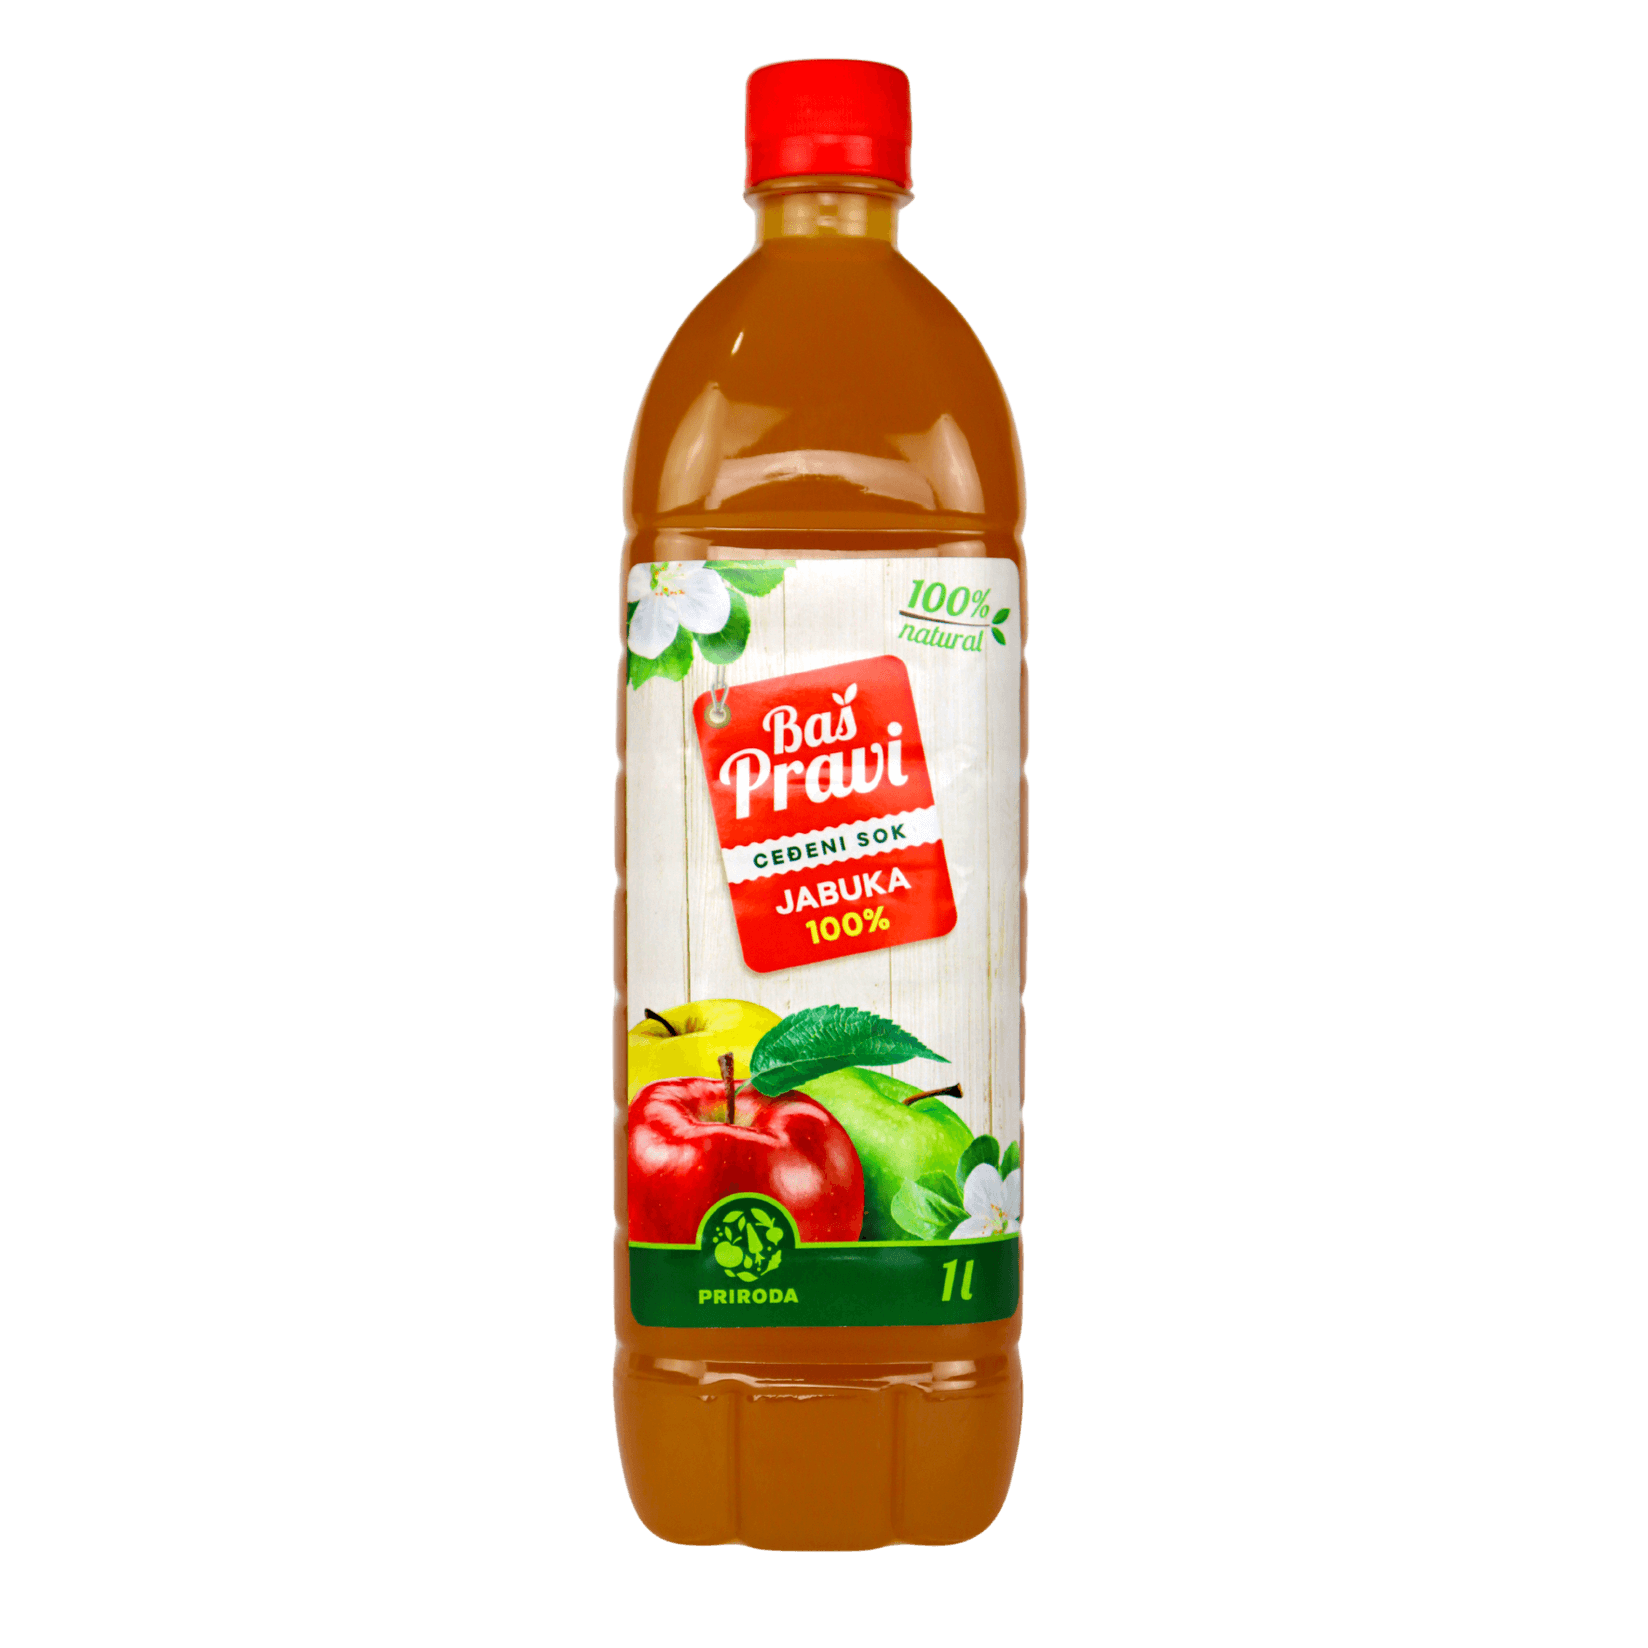 Selected image for BAŠ PRAVI Ceđeni sok jabuka 1l